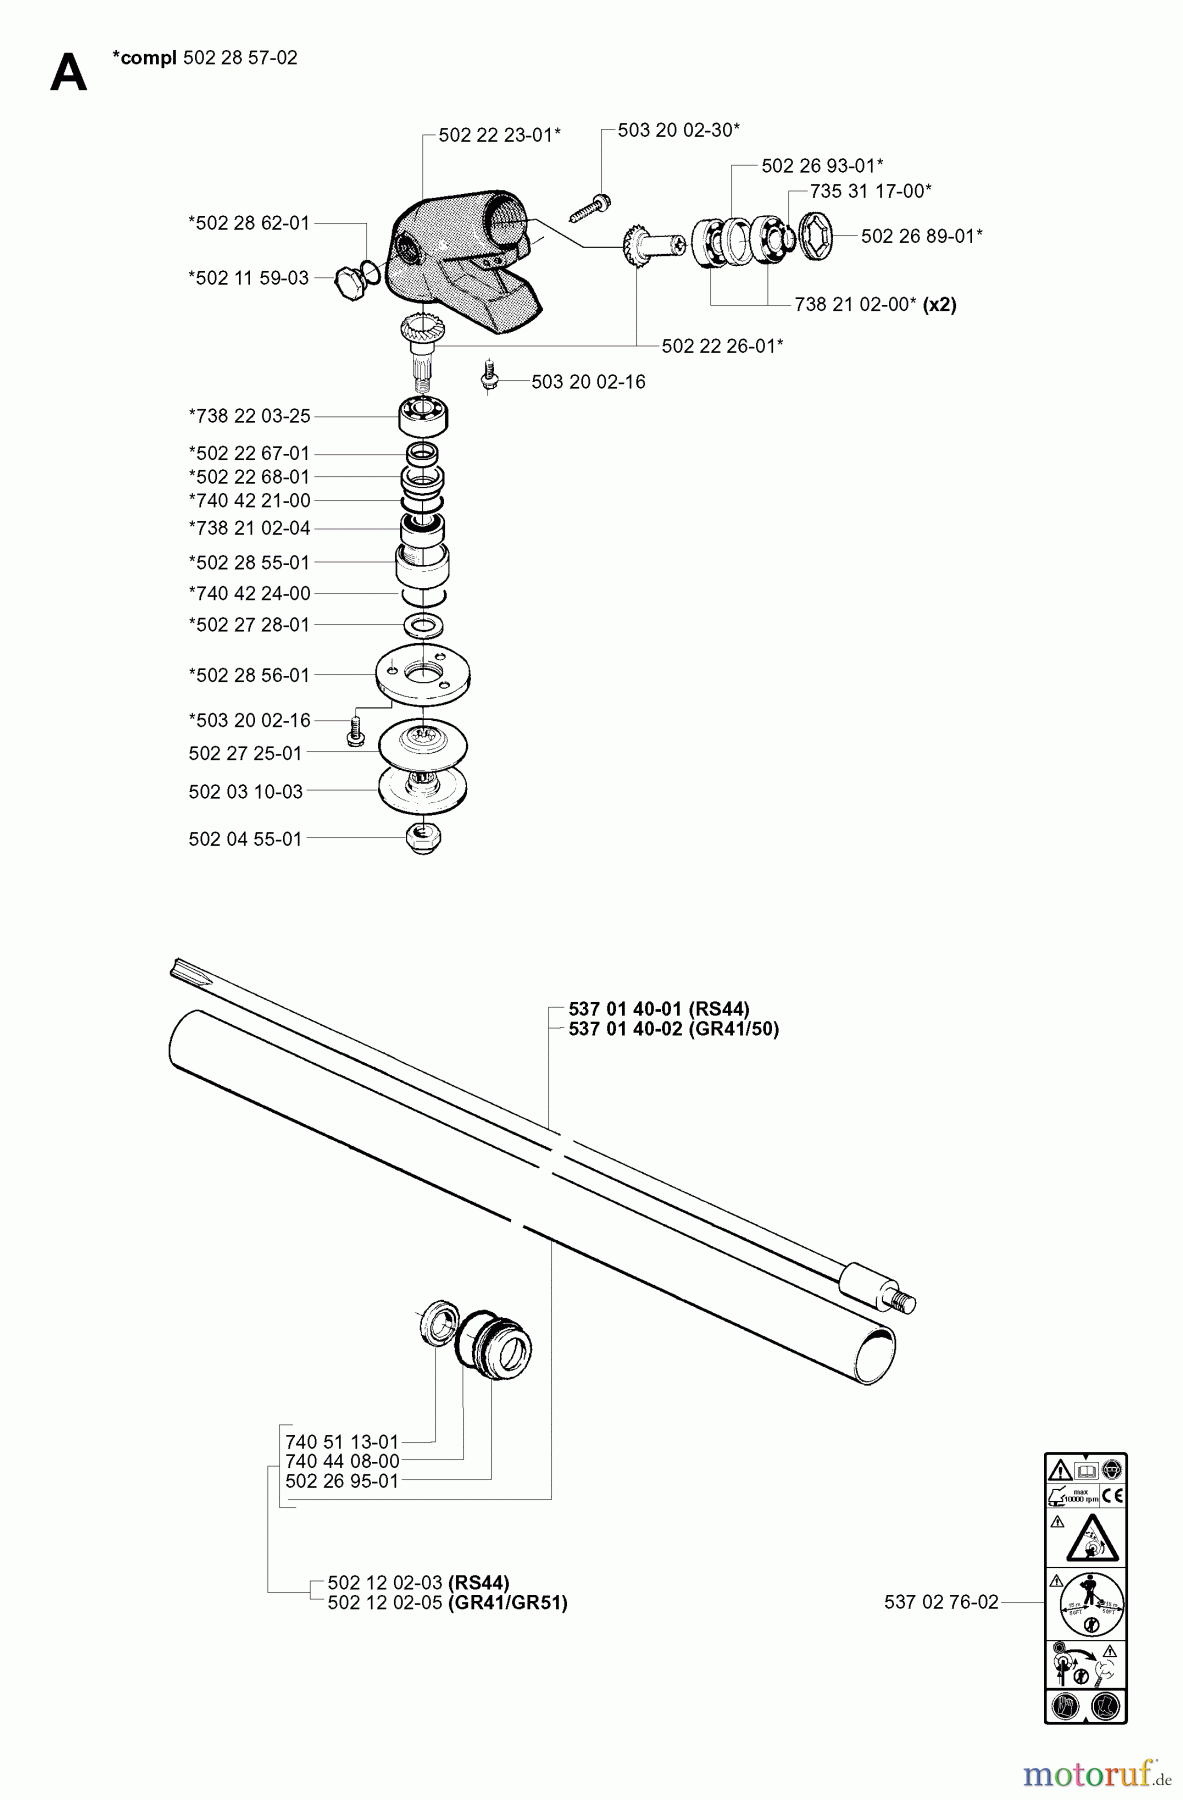  Jonsered Motorsensen, Trimmer GR41 EPA - Jonsered String/Brush Trimmer (2001-03) BEVEL GEAR SHAFT